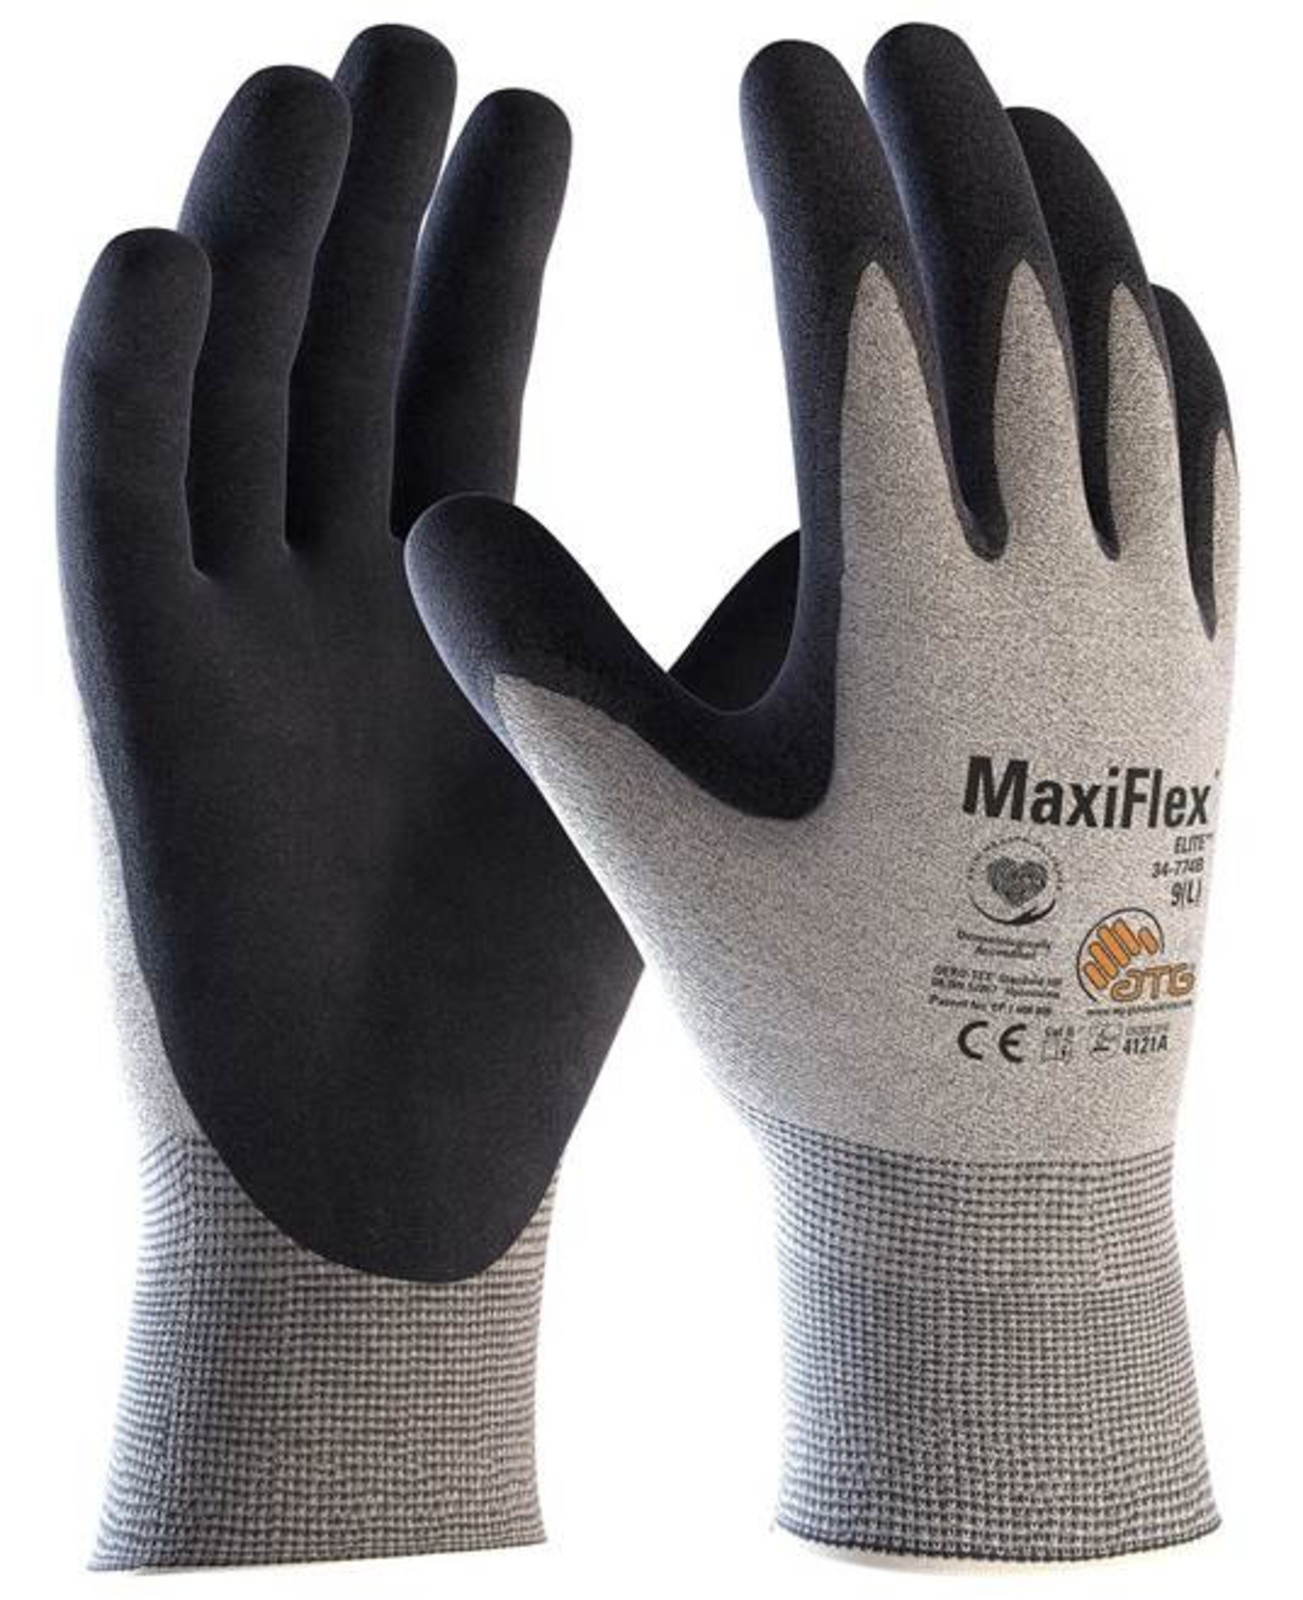 Pracovné rukavice ATG MaxiFlex Elite 34-774 - veľkosť: 5/XXS, farba: sivá